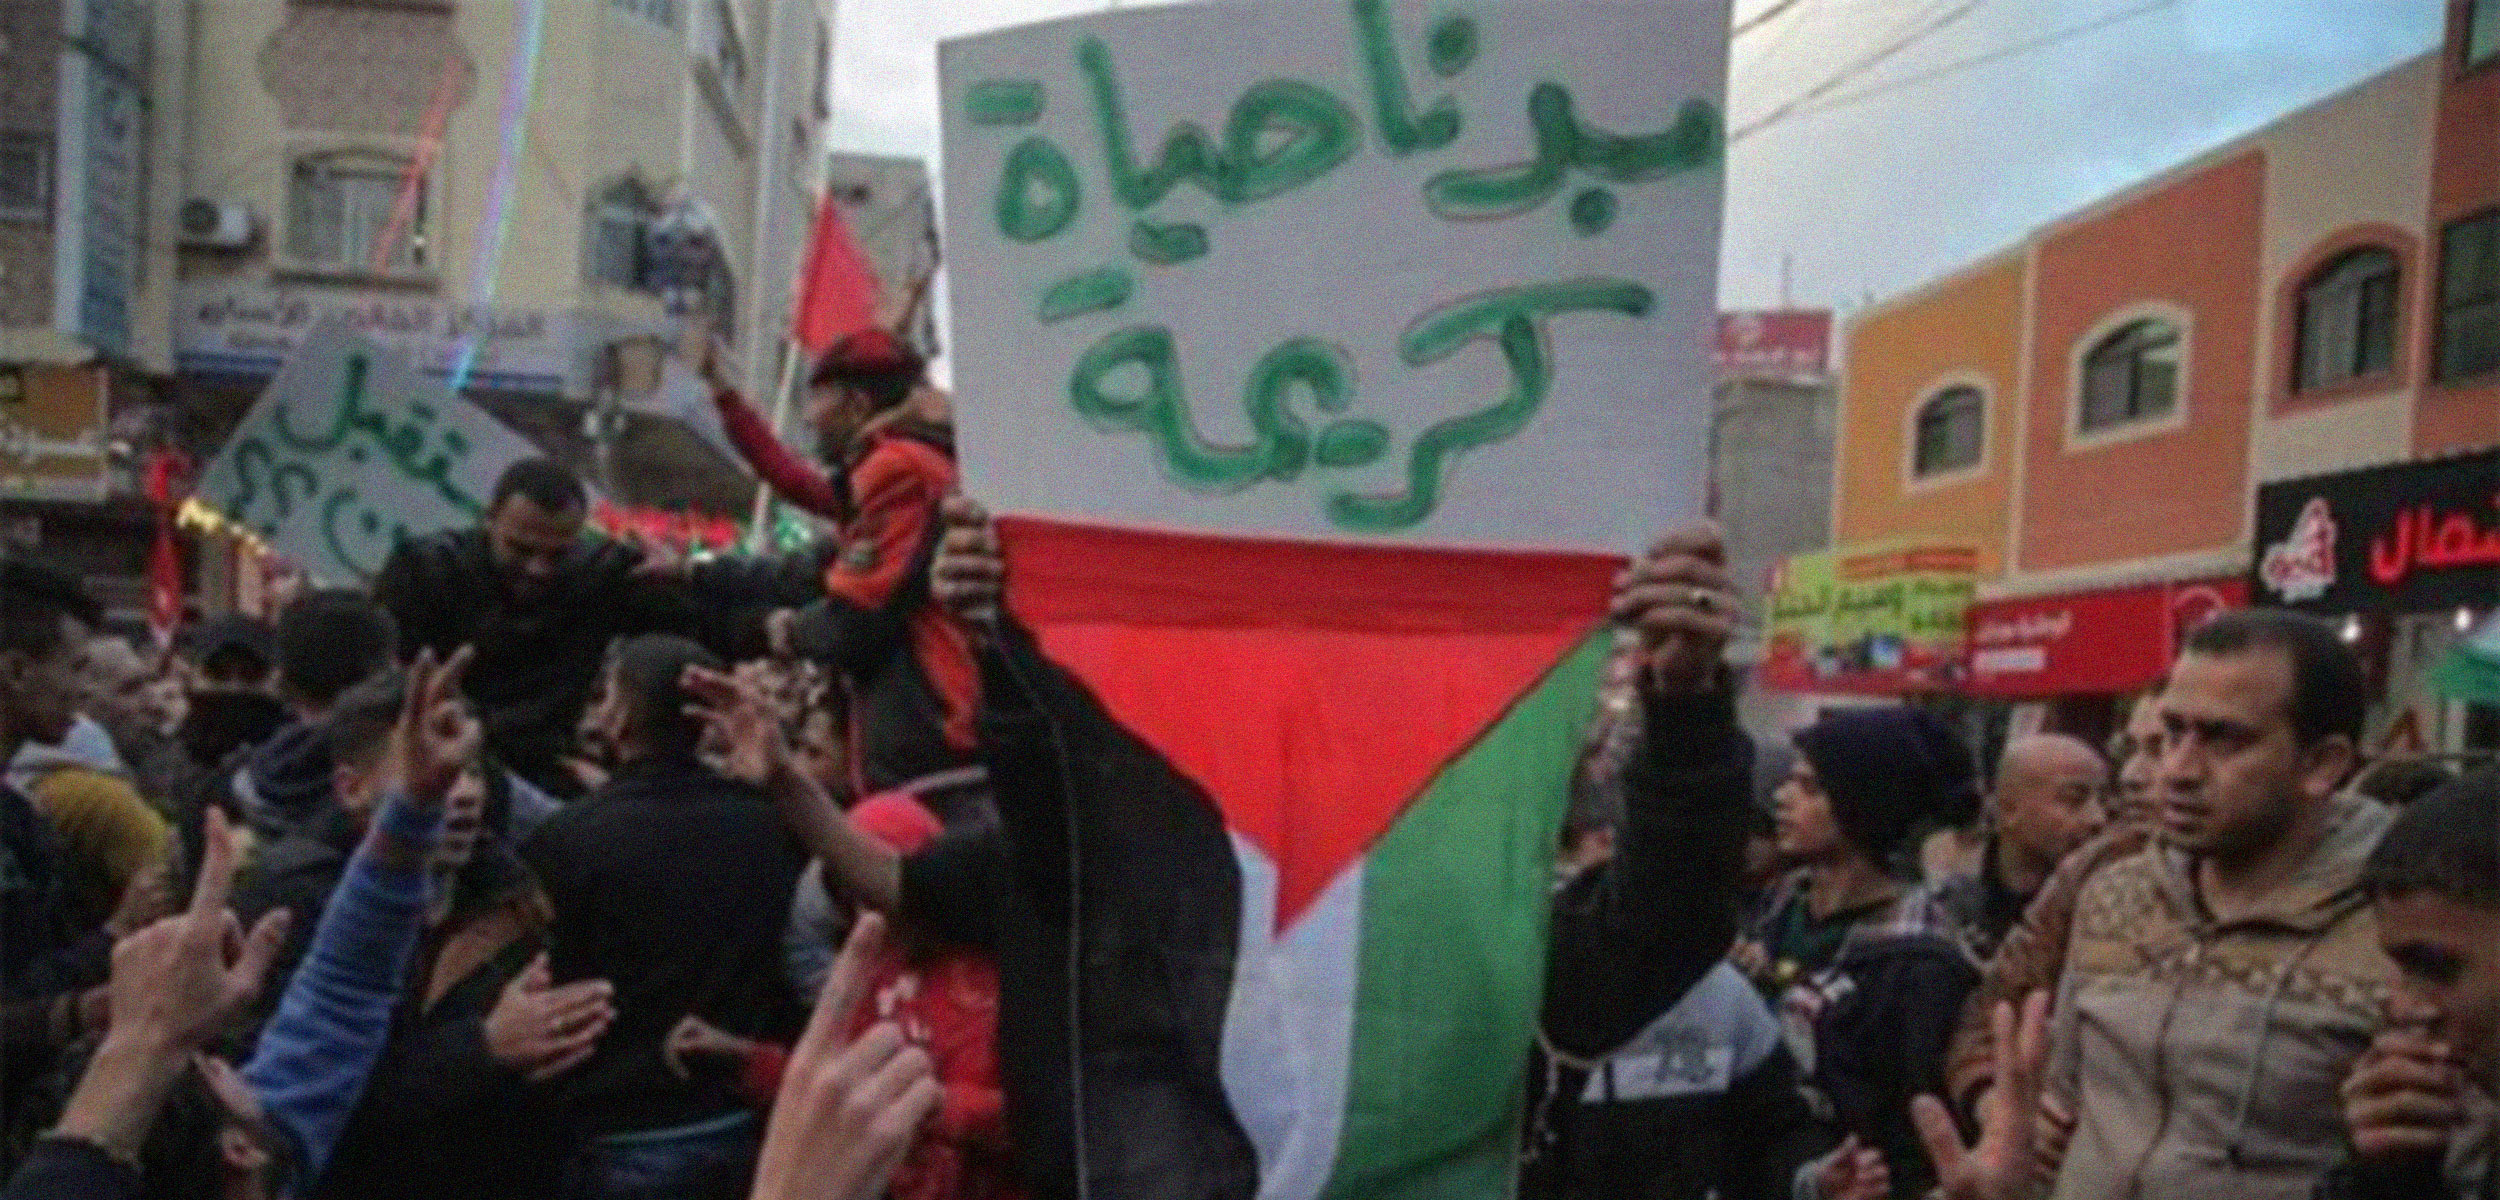 حراك "بدنا نعيش" مستمر في غزّة... وحماس تواصل انتهاكاتها